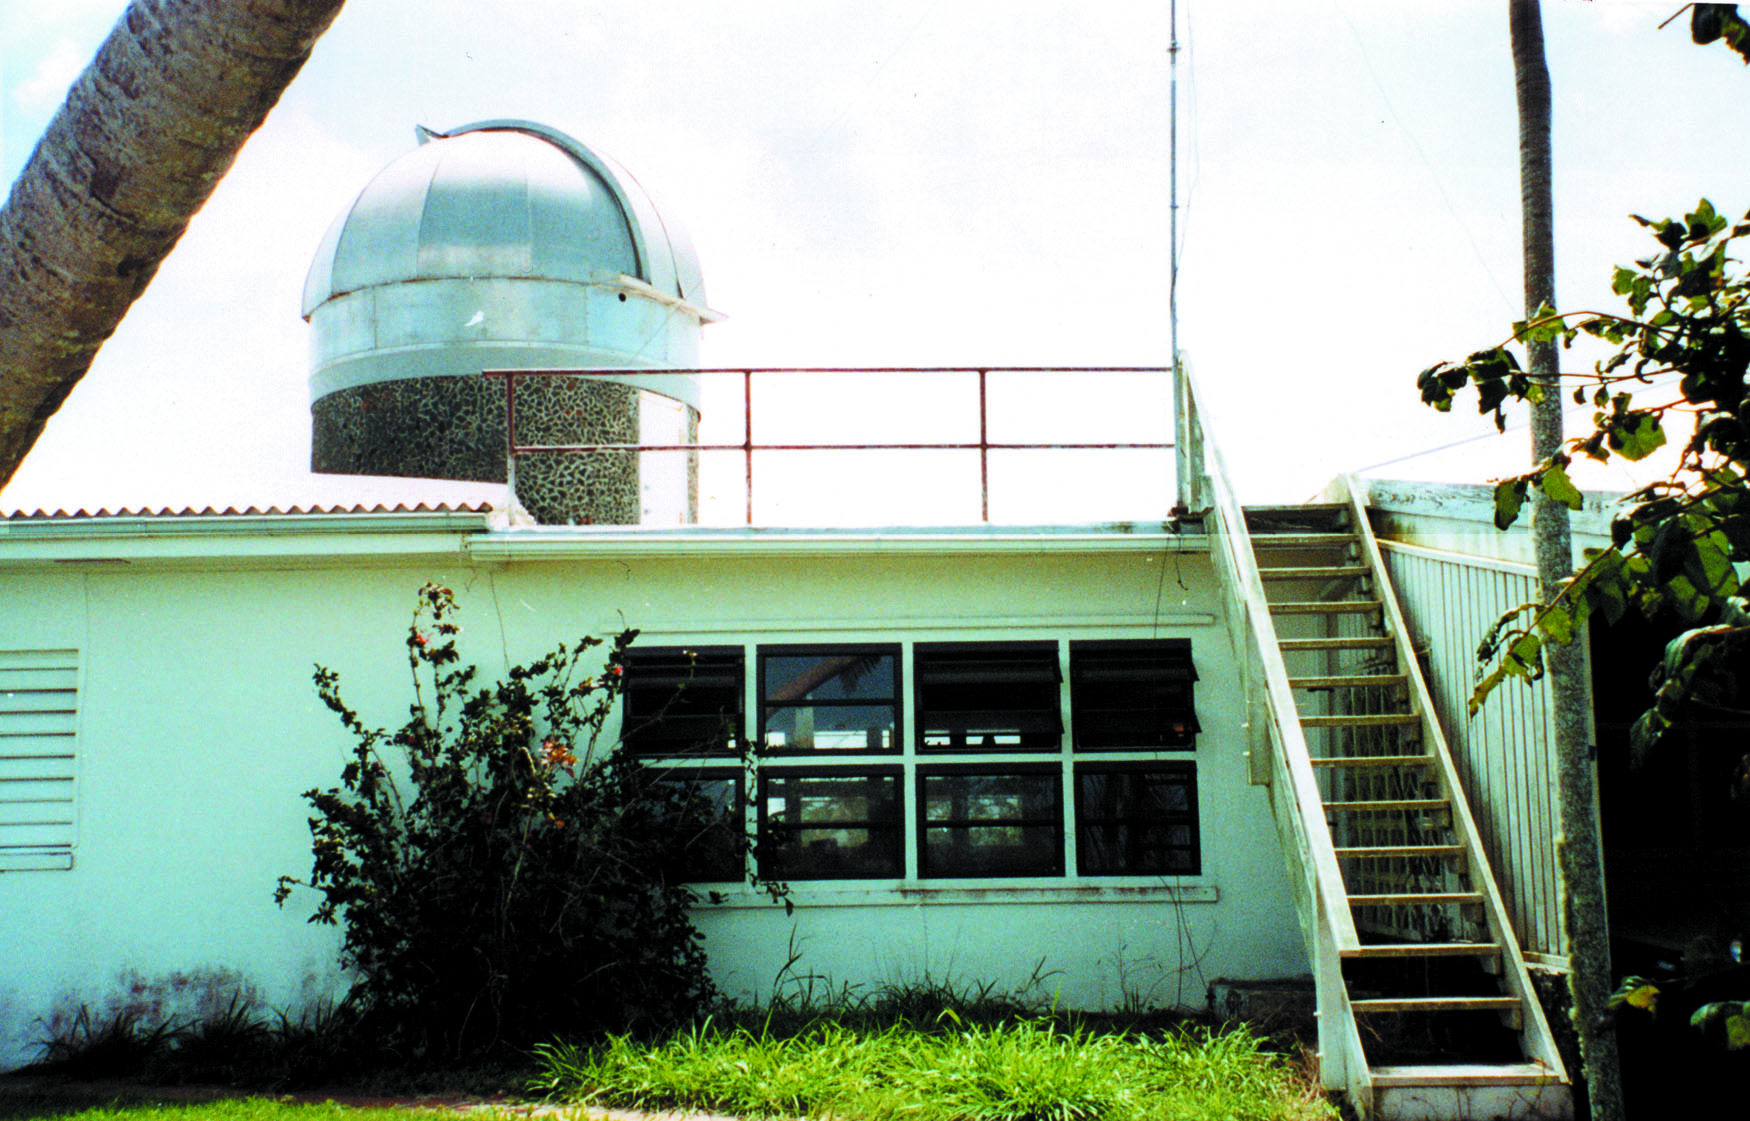 The Etelman Observatory 